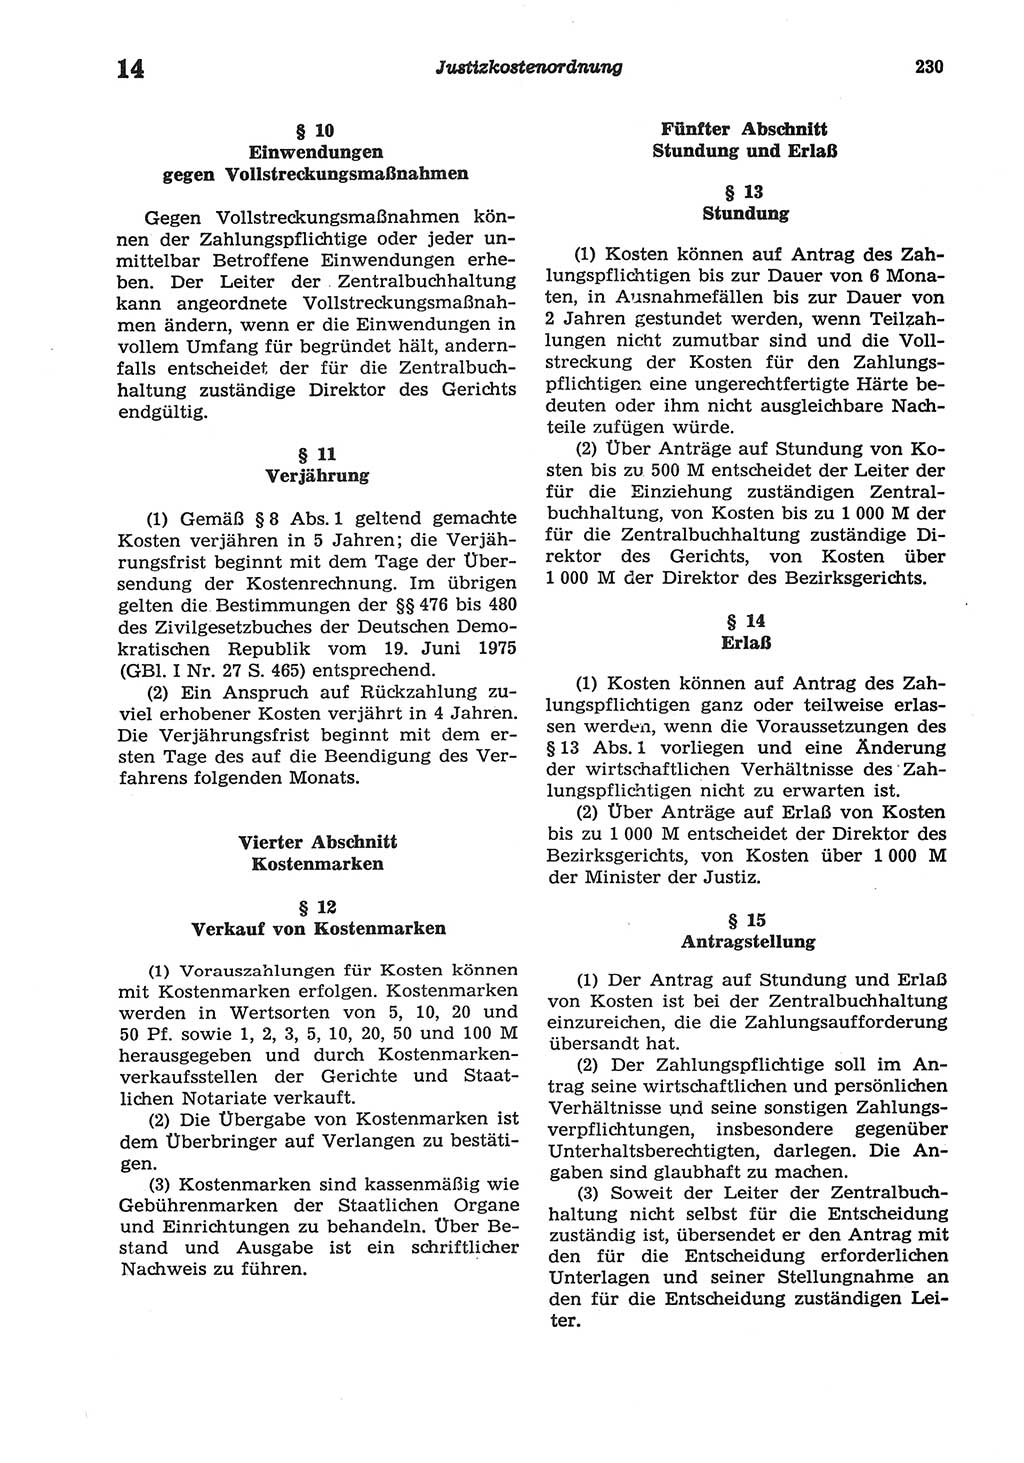 Strafprozeßordnung (StPO) der Deutschen Demokratischen Republik (DDR) sowie angrenzende Gesetze und Bestimmungen 1977, Seite 230 (StPO DDR Ges. Best. 1977, S. 230)